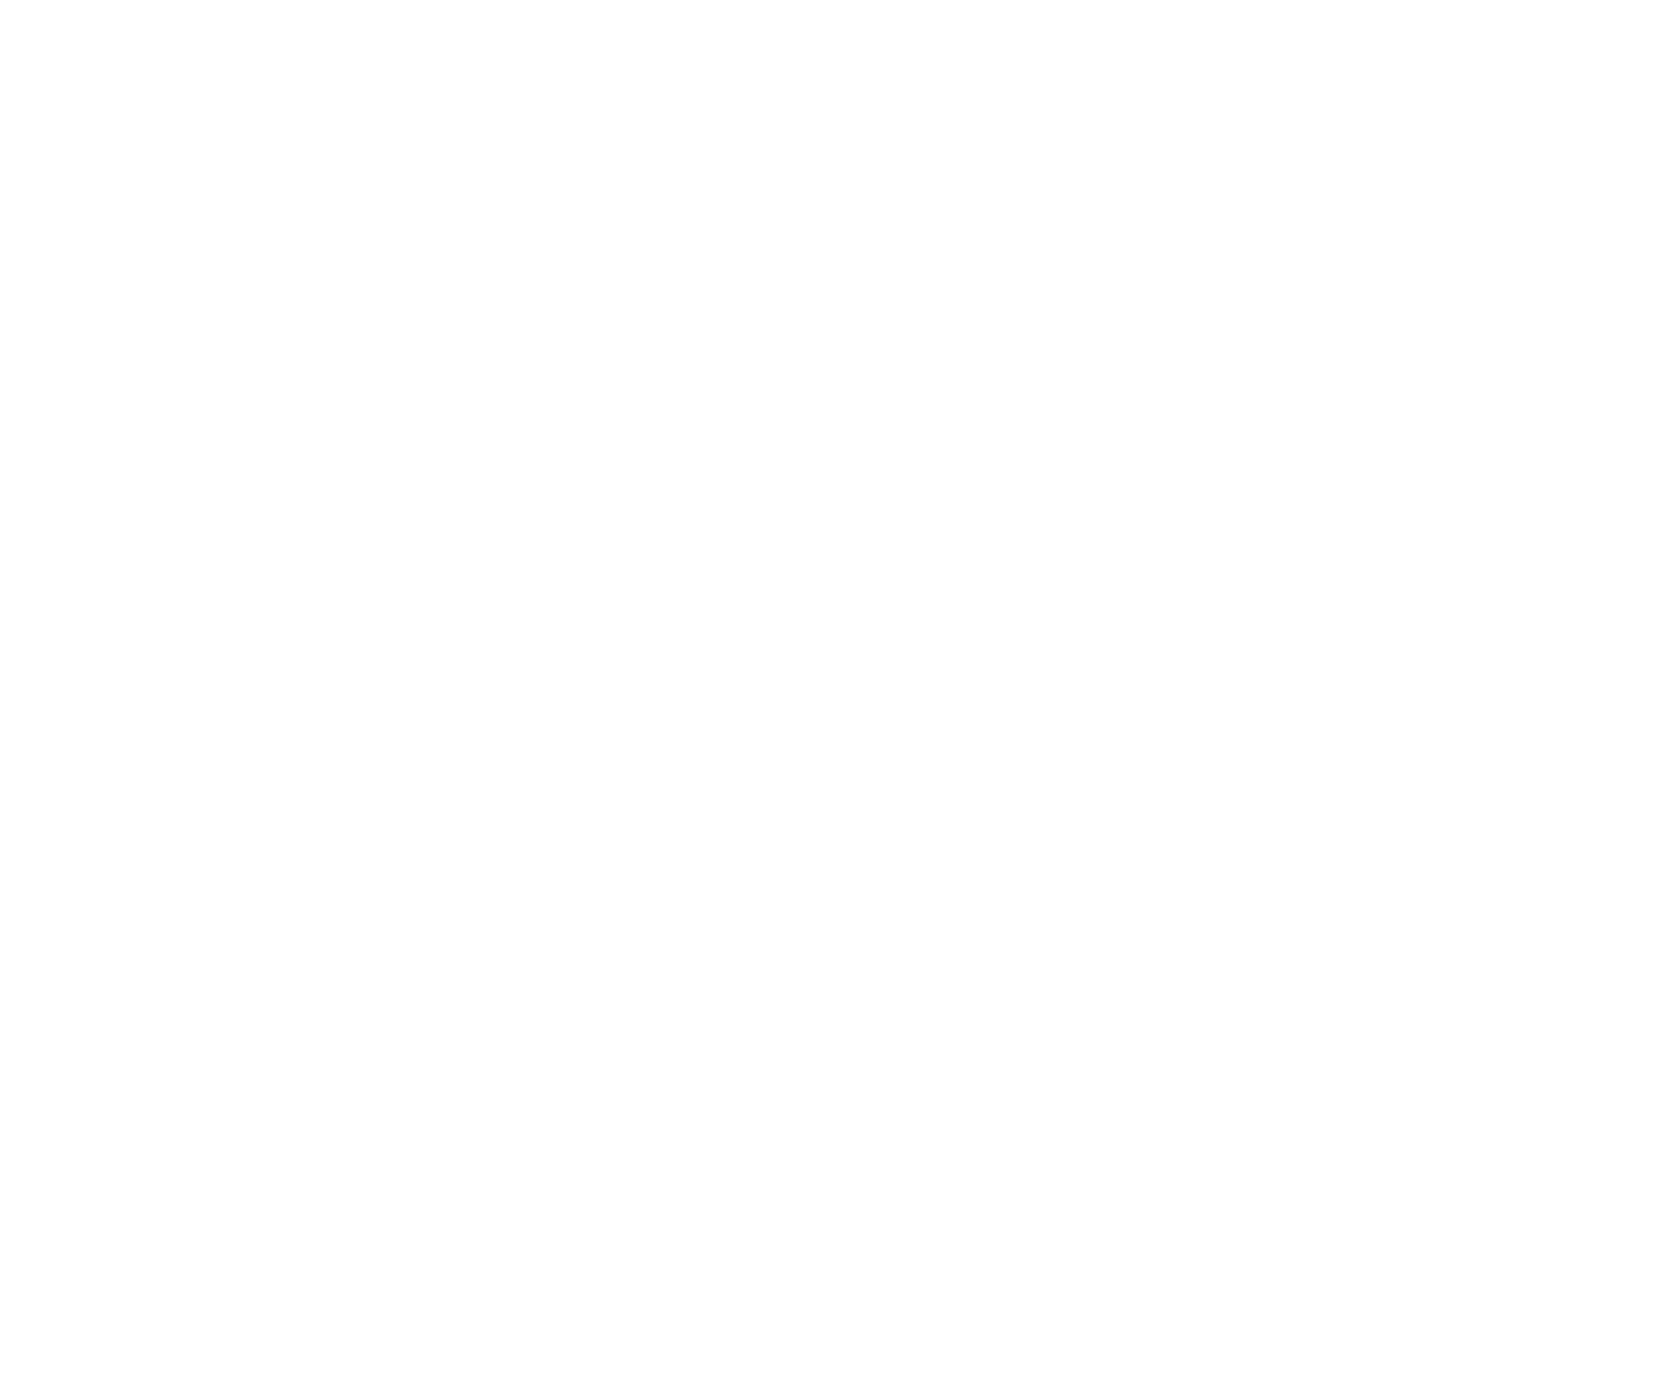 HISTORY OF CAMP SIERRA